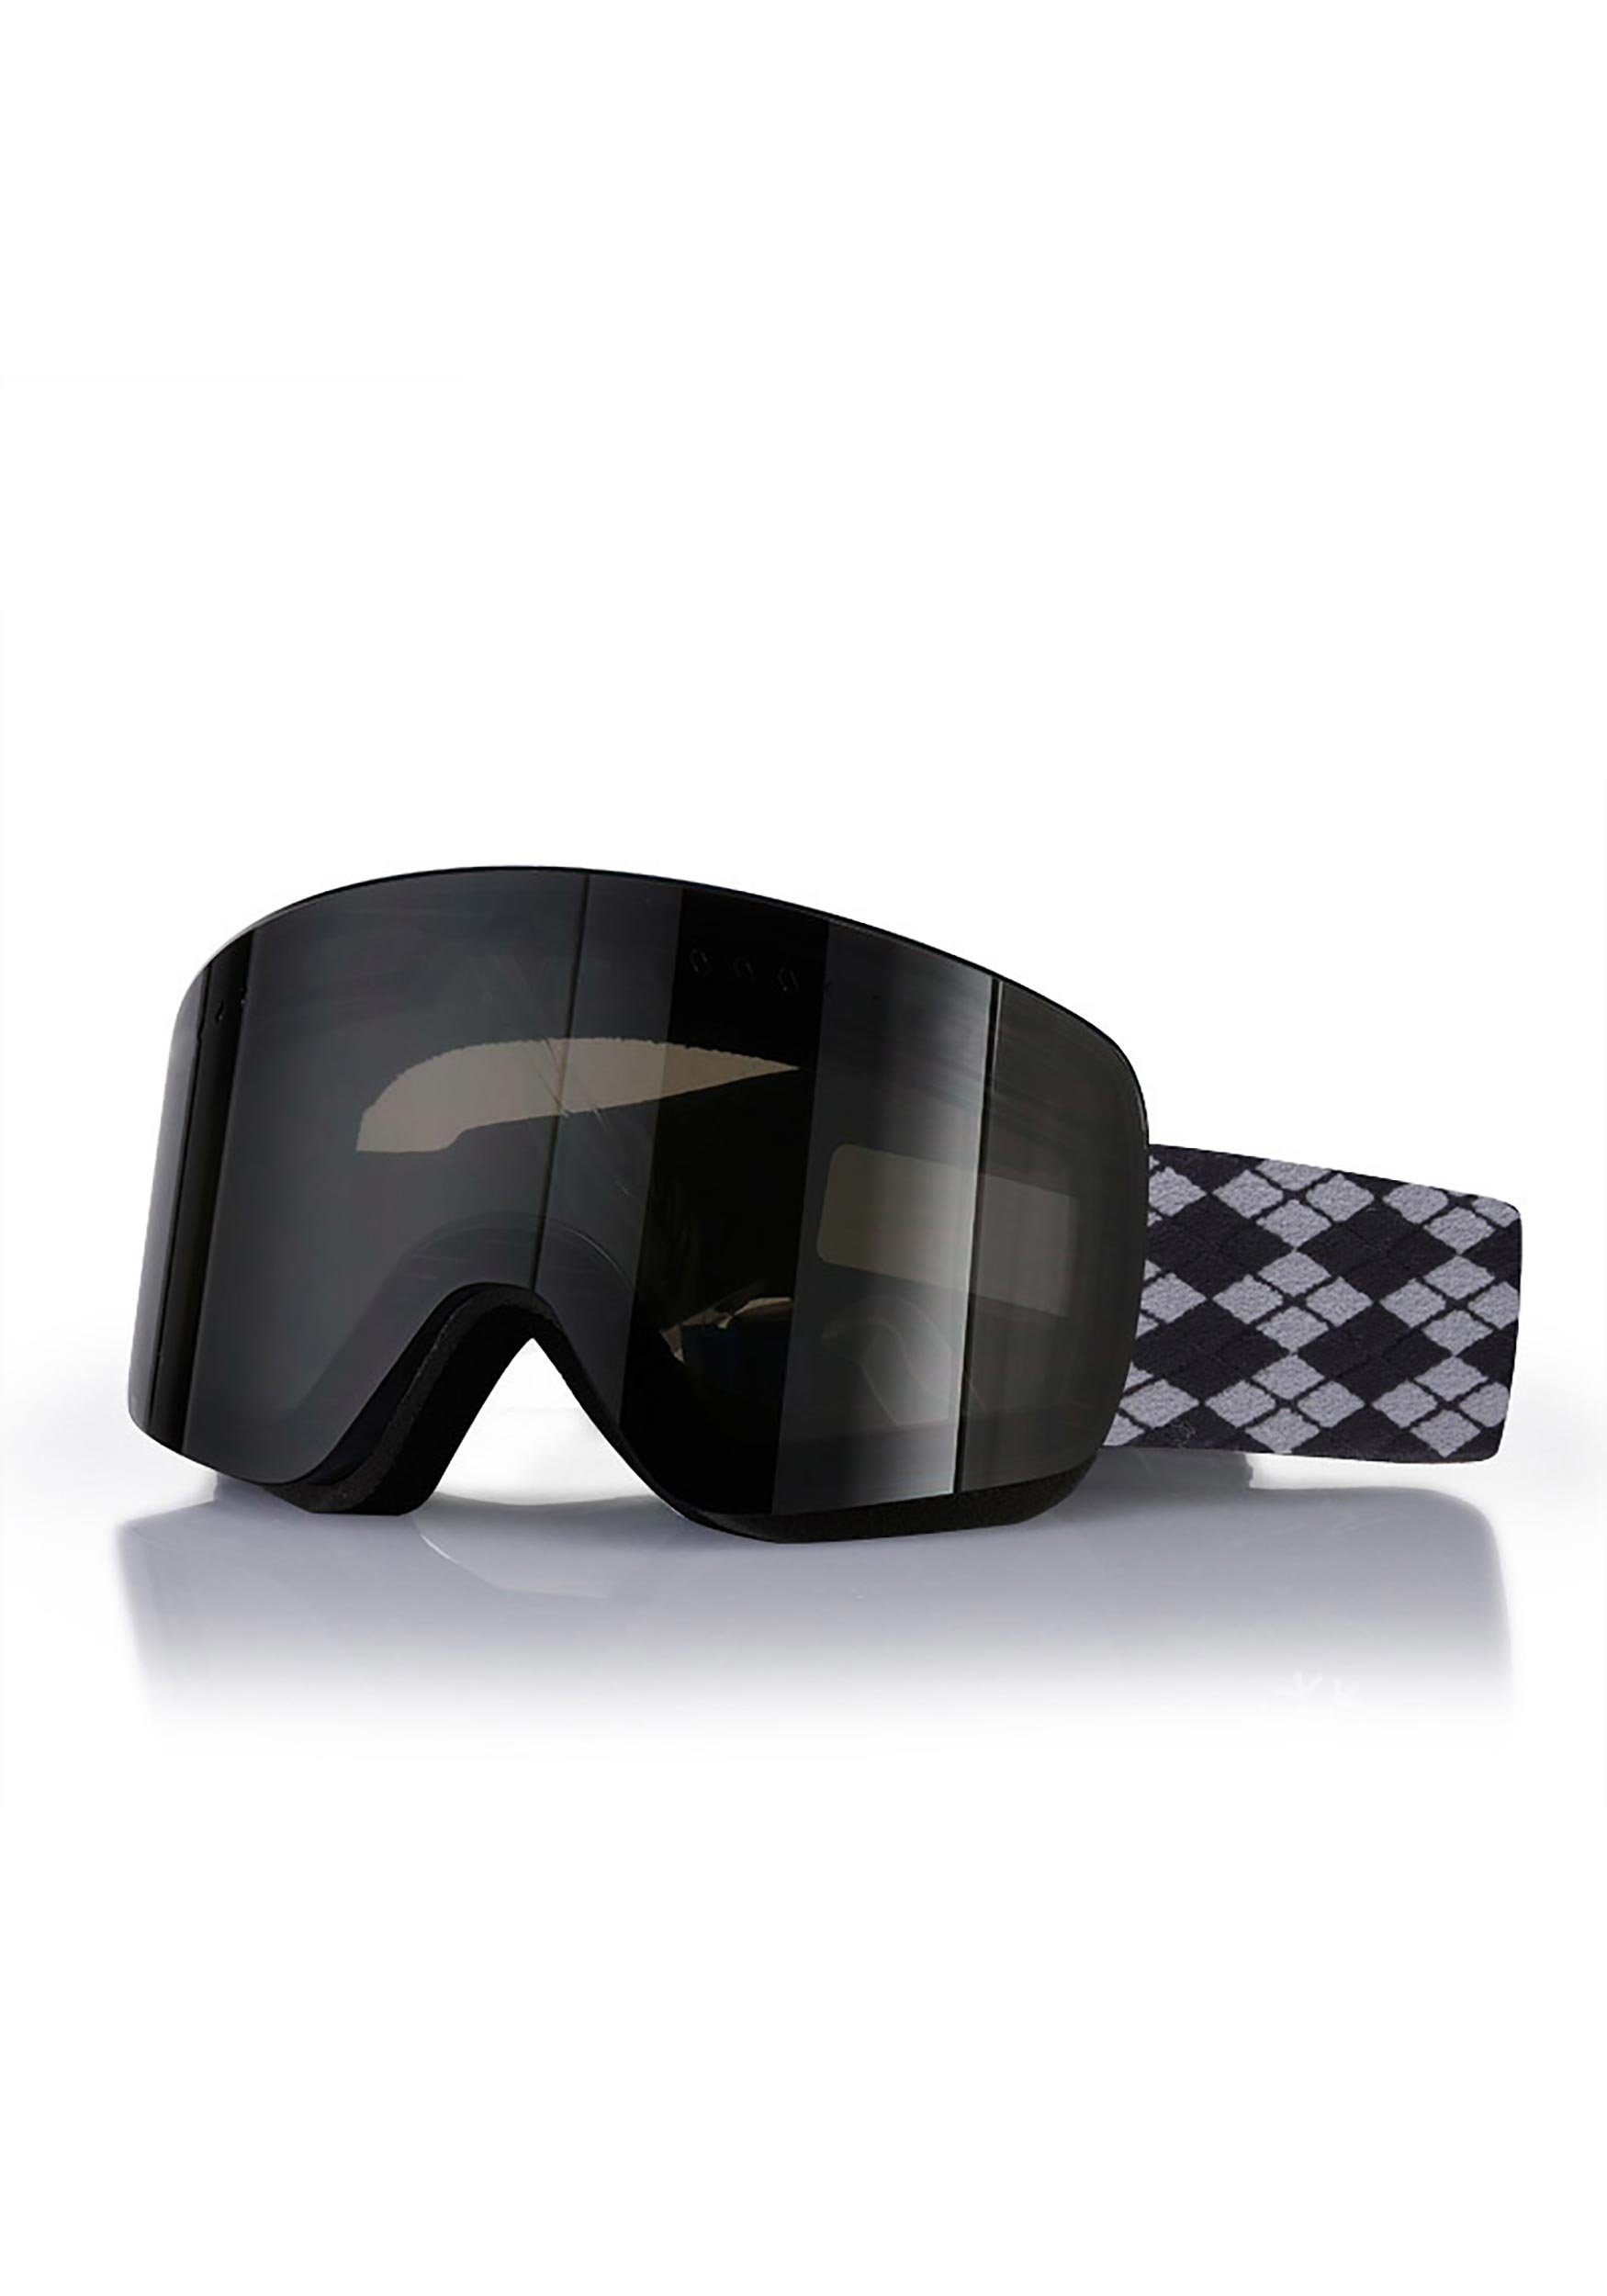 Snowboardbrille Objektiv Zweilagiges 7 Magnet Kugelförmiges Skibrille MAGICSHE Design